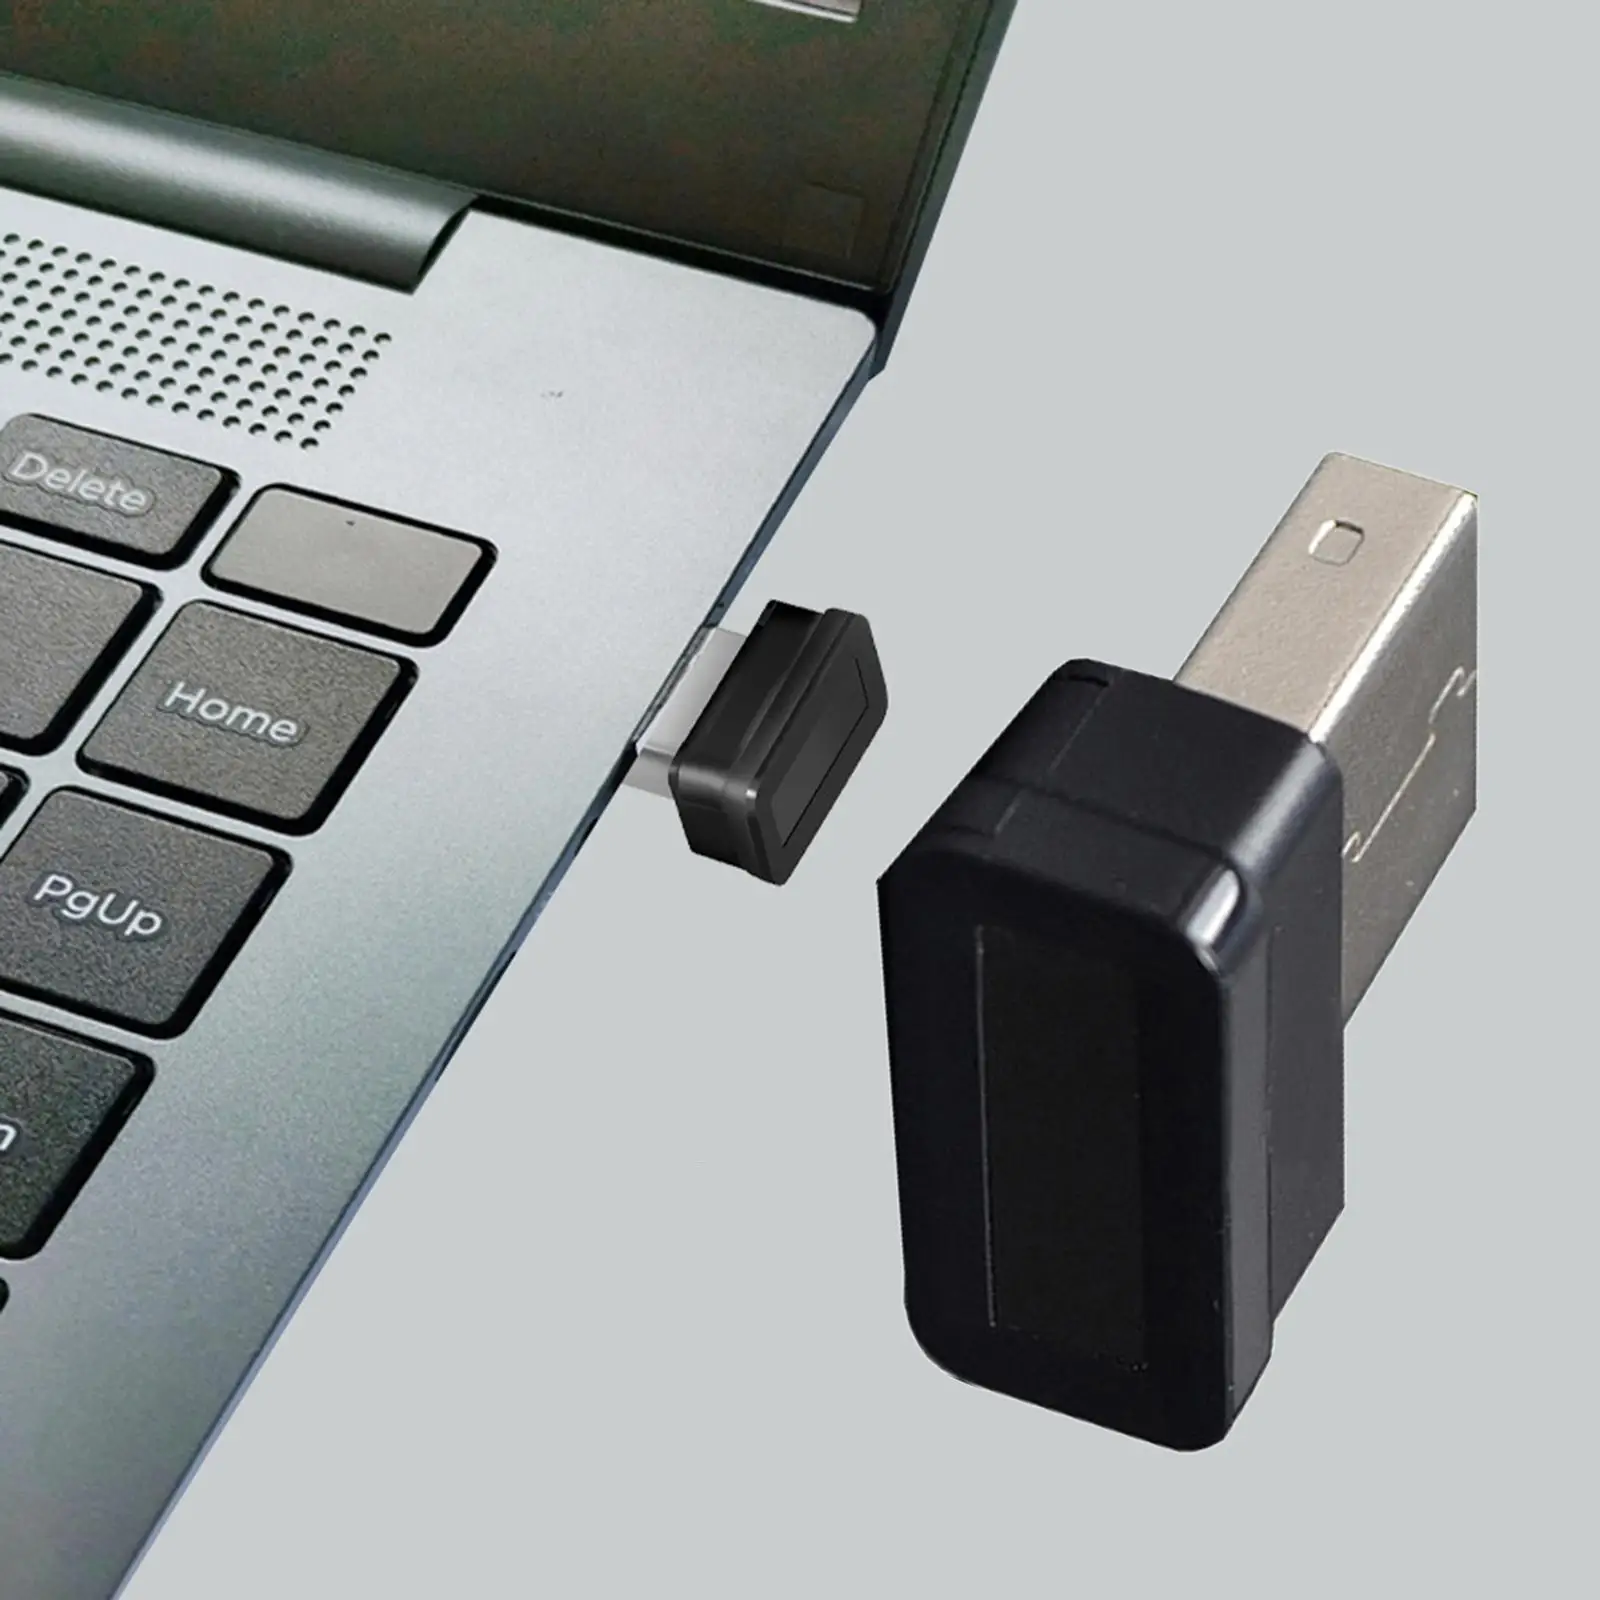 USB Fingerprint Reader 360 Degree Device Biometric for PC Laptop